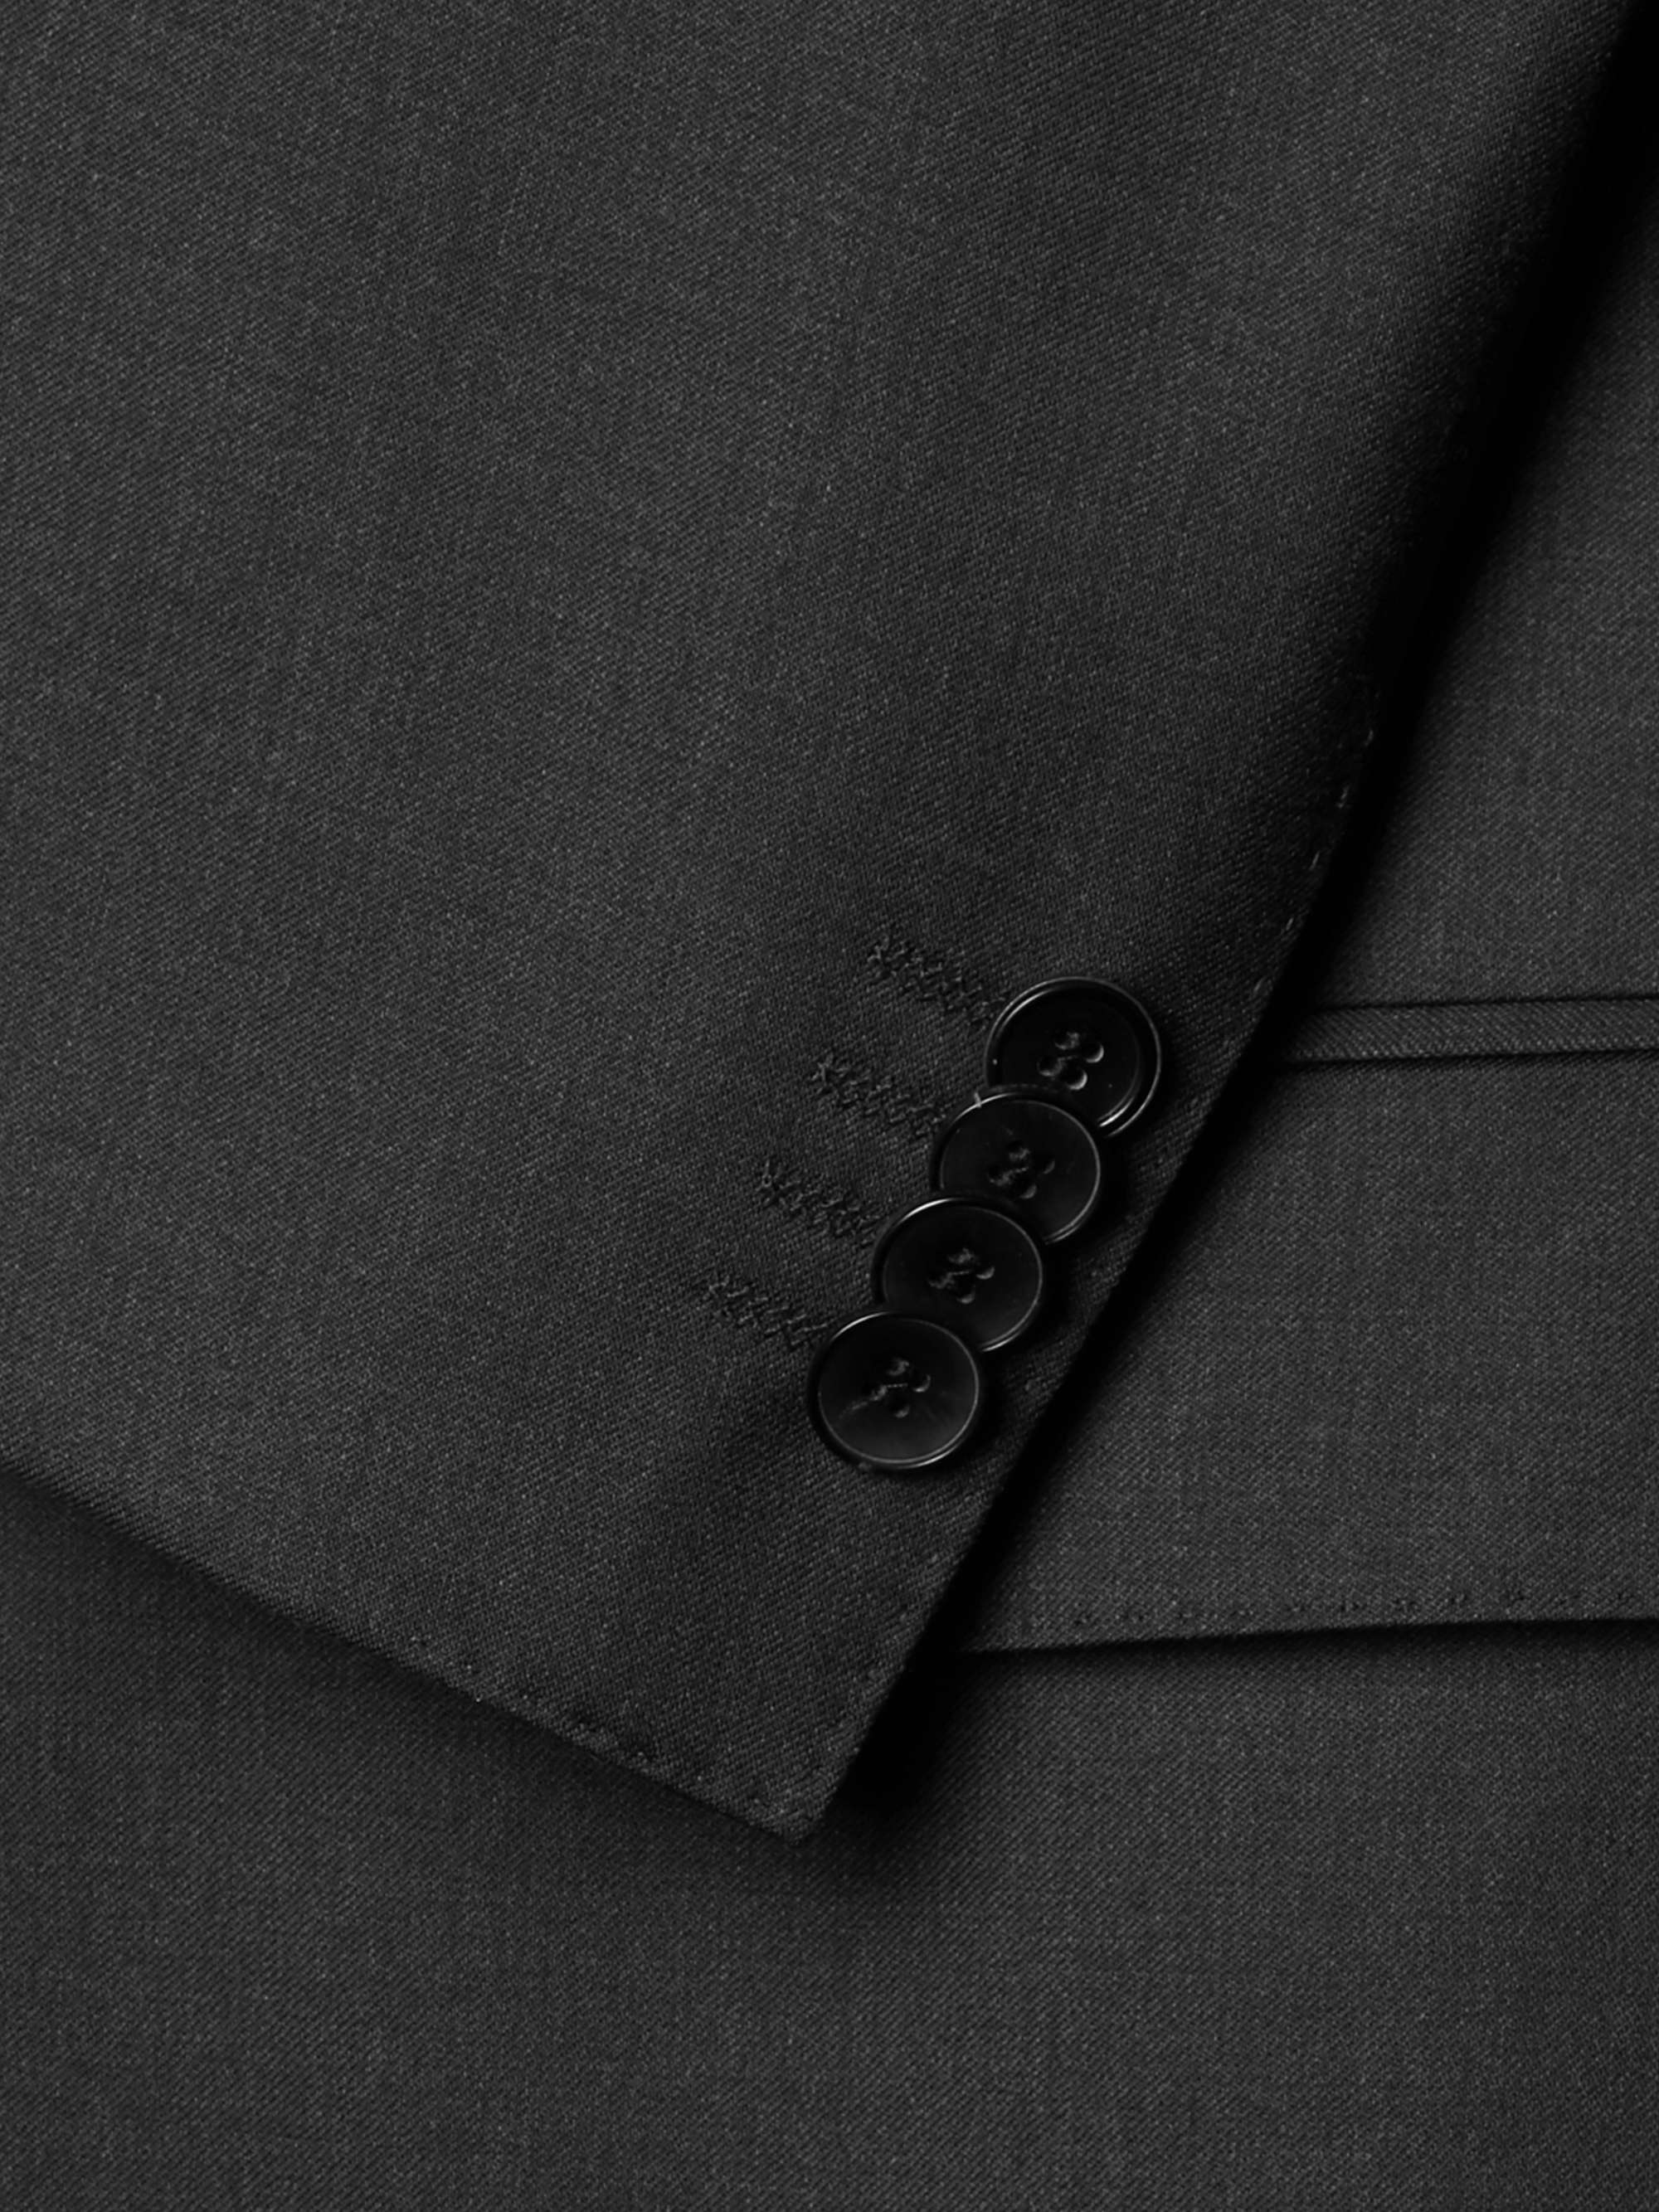 HUGO BOSS Grey Hayes Slim-Fit Super 120s Virgin Wool Suit Jacket | MR PORTER